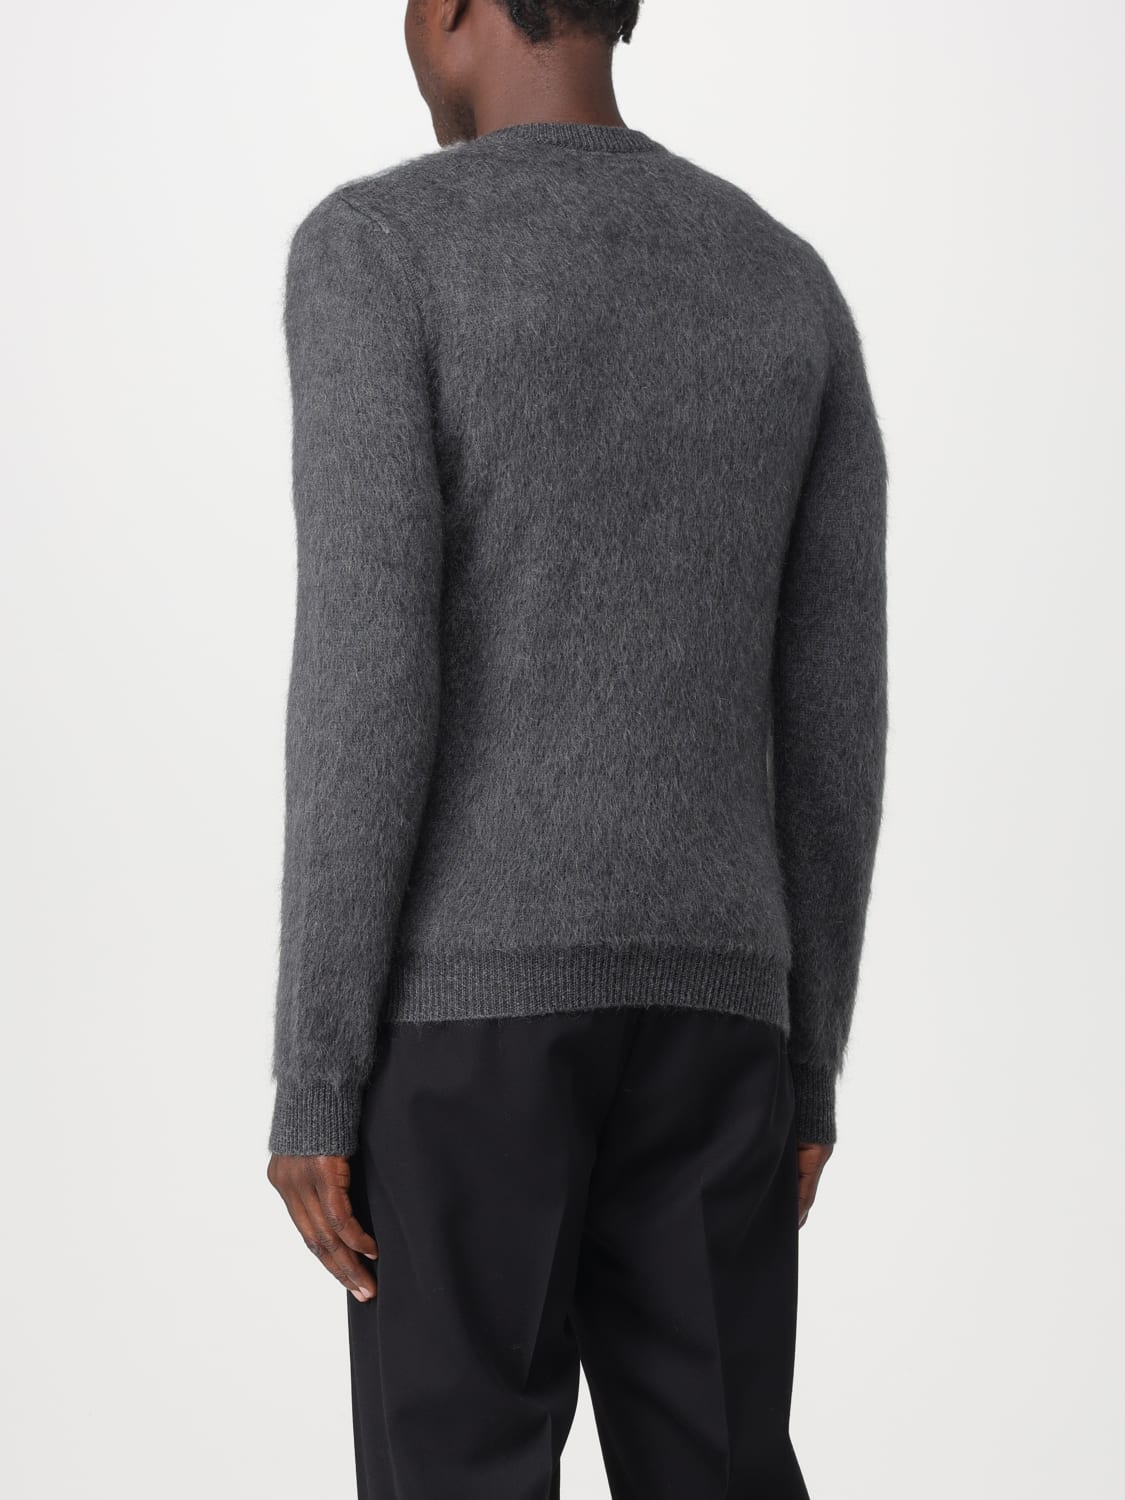 FENDI: sweater in wool blend - Grey | Fendi sweater FZX091APJJ online ...